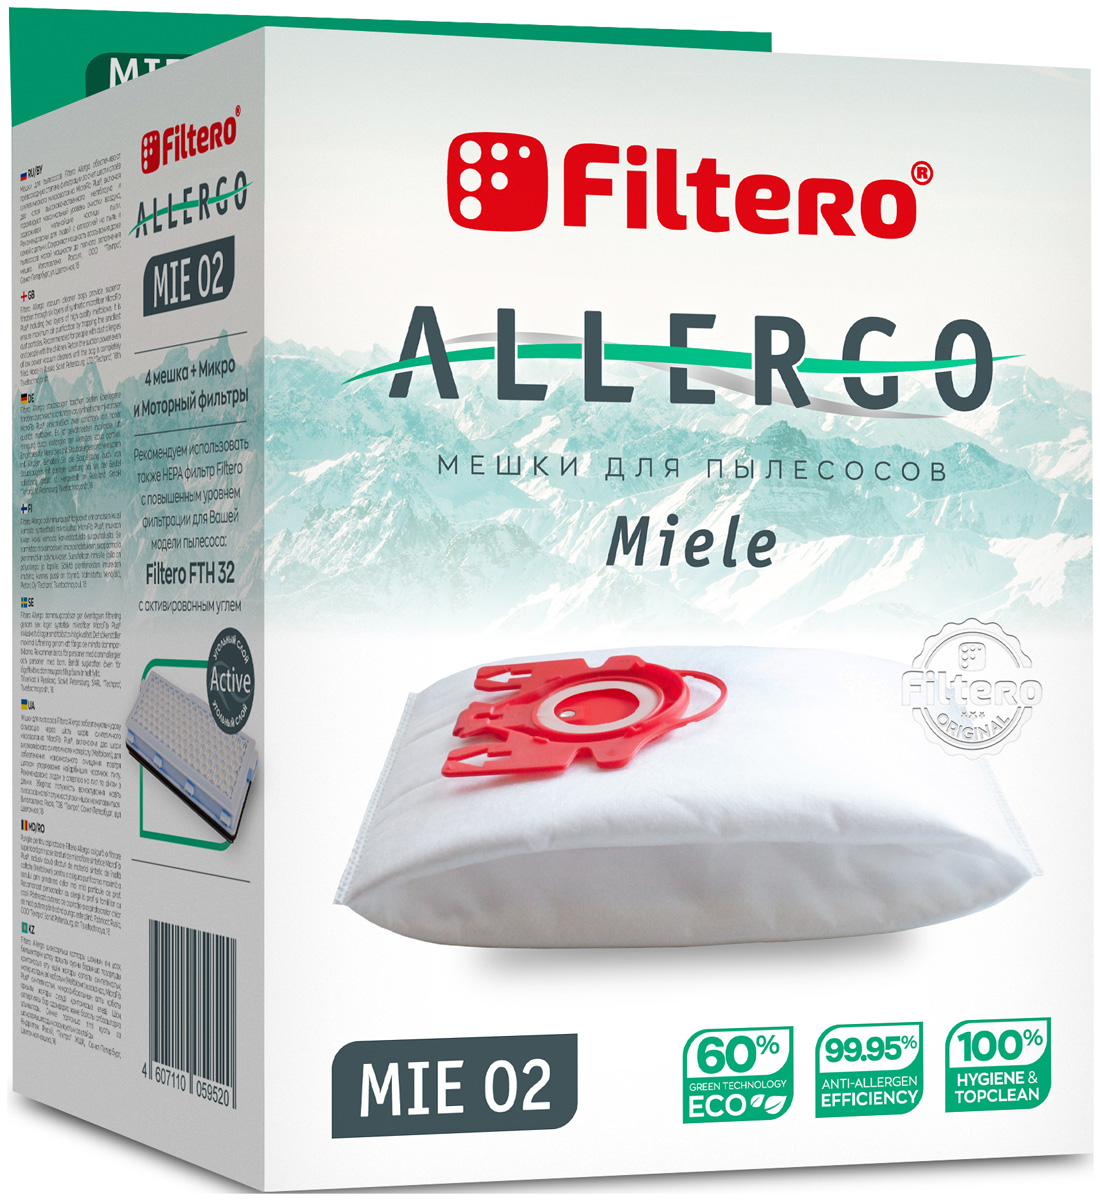 Пылесборники Filtero MIE 02 Allergo 4 шт. + моторный фильтр и микрофильтр цена и фото